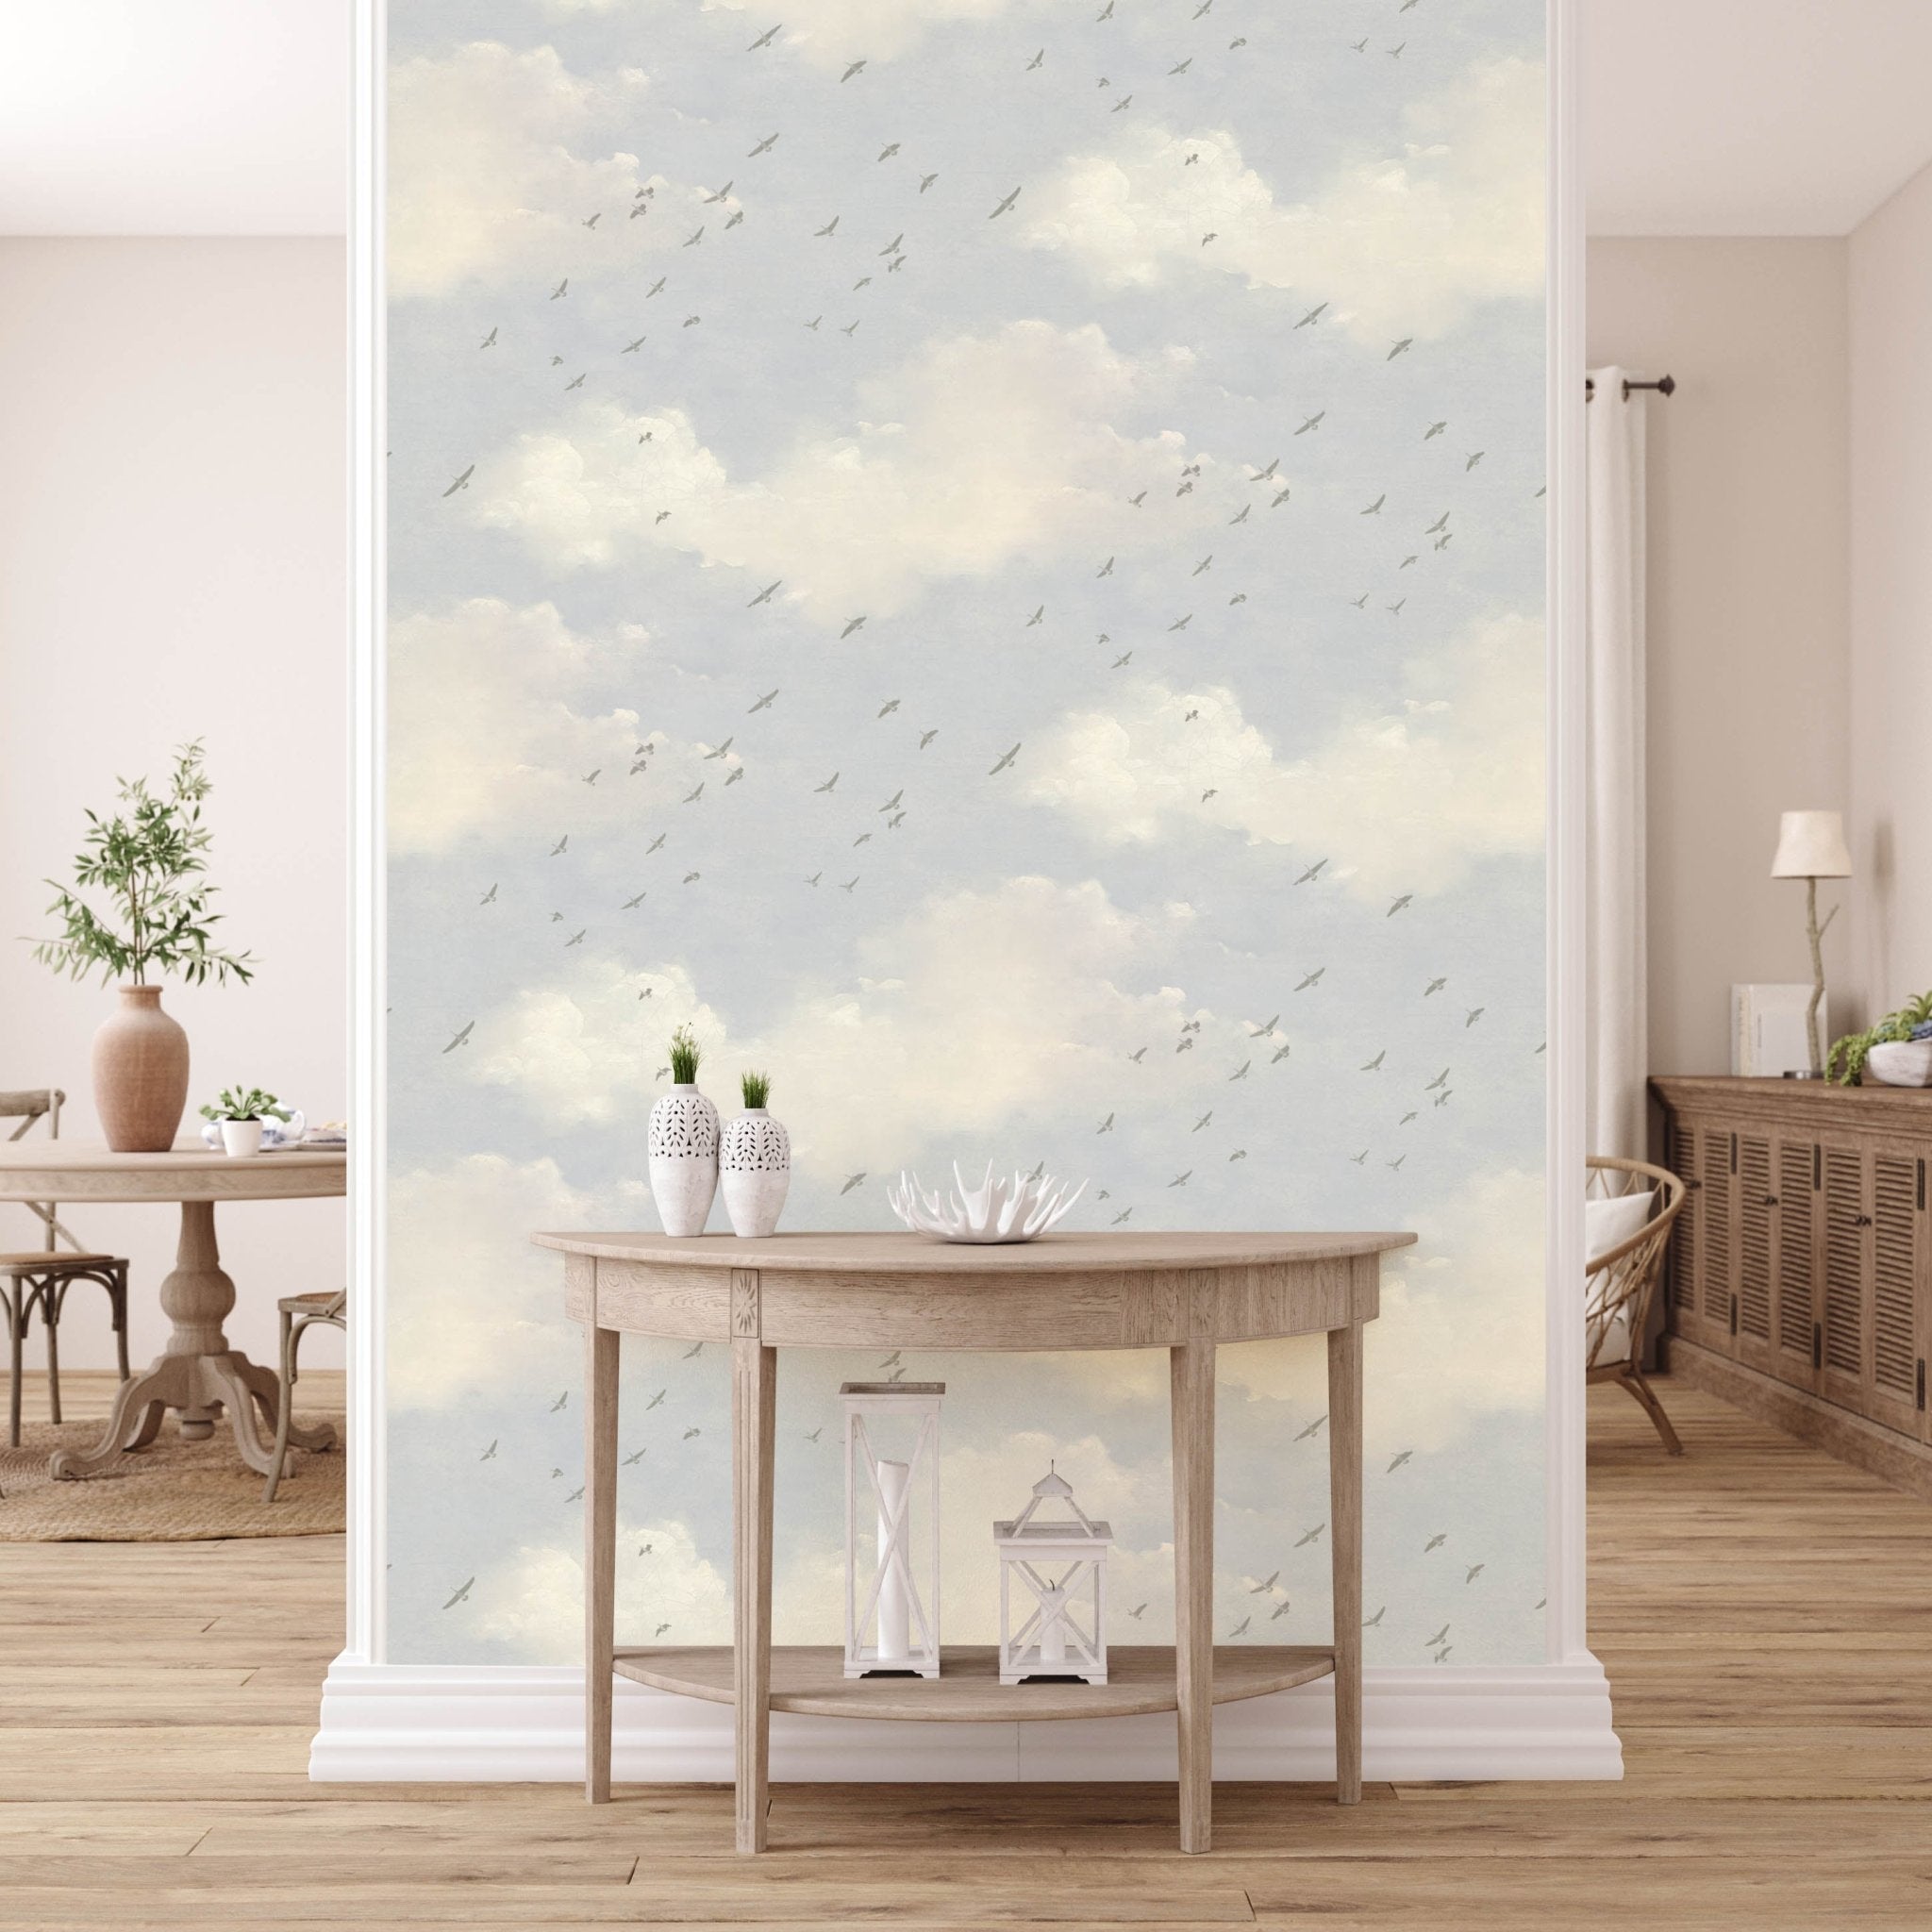 Cute cloud pattern removable wallpaper by Livettes  Livettes EU